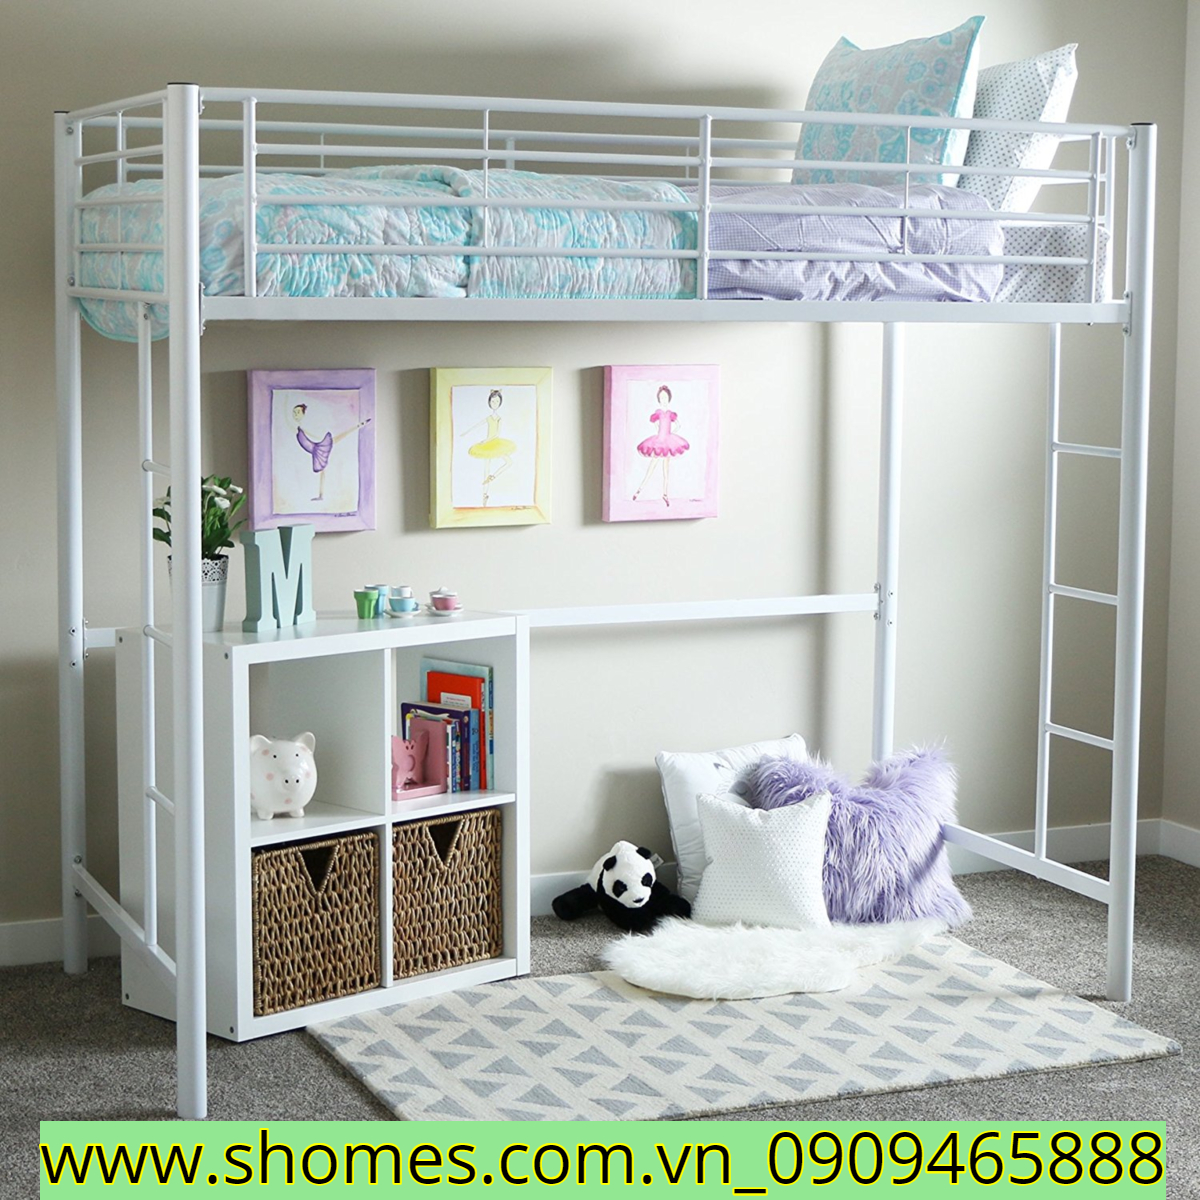 giường tầng, giường tầng cho phòng trẻ em, nội thất phòng trẻ em, nội thất phòng trẻ em giường tầng đơn giản, giường tầng thiết kế đơn giản